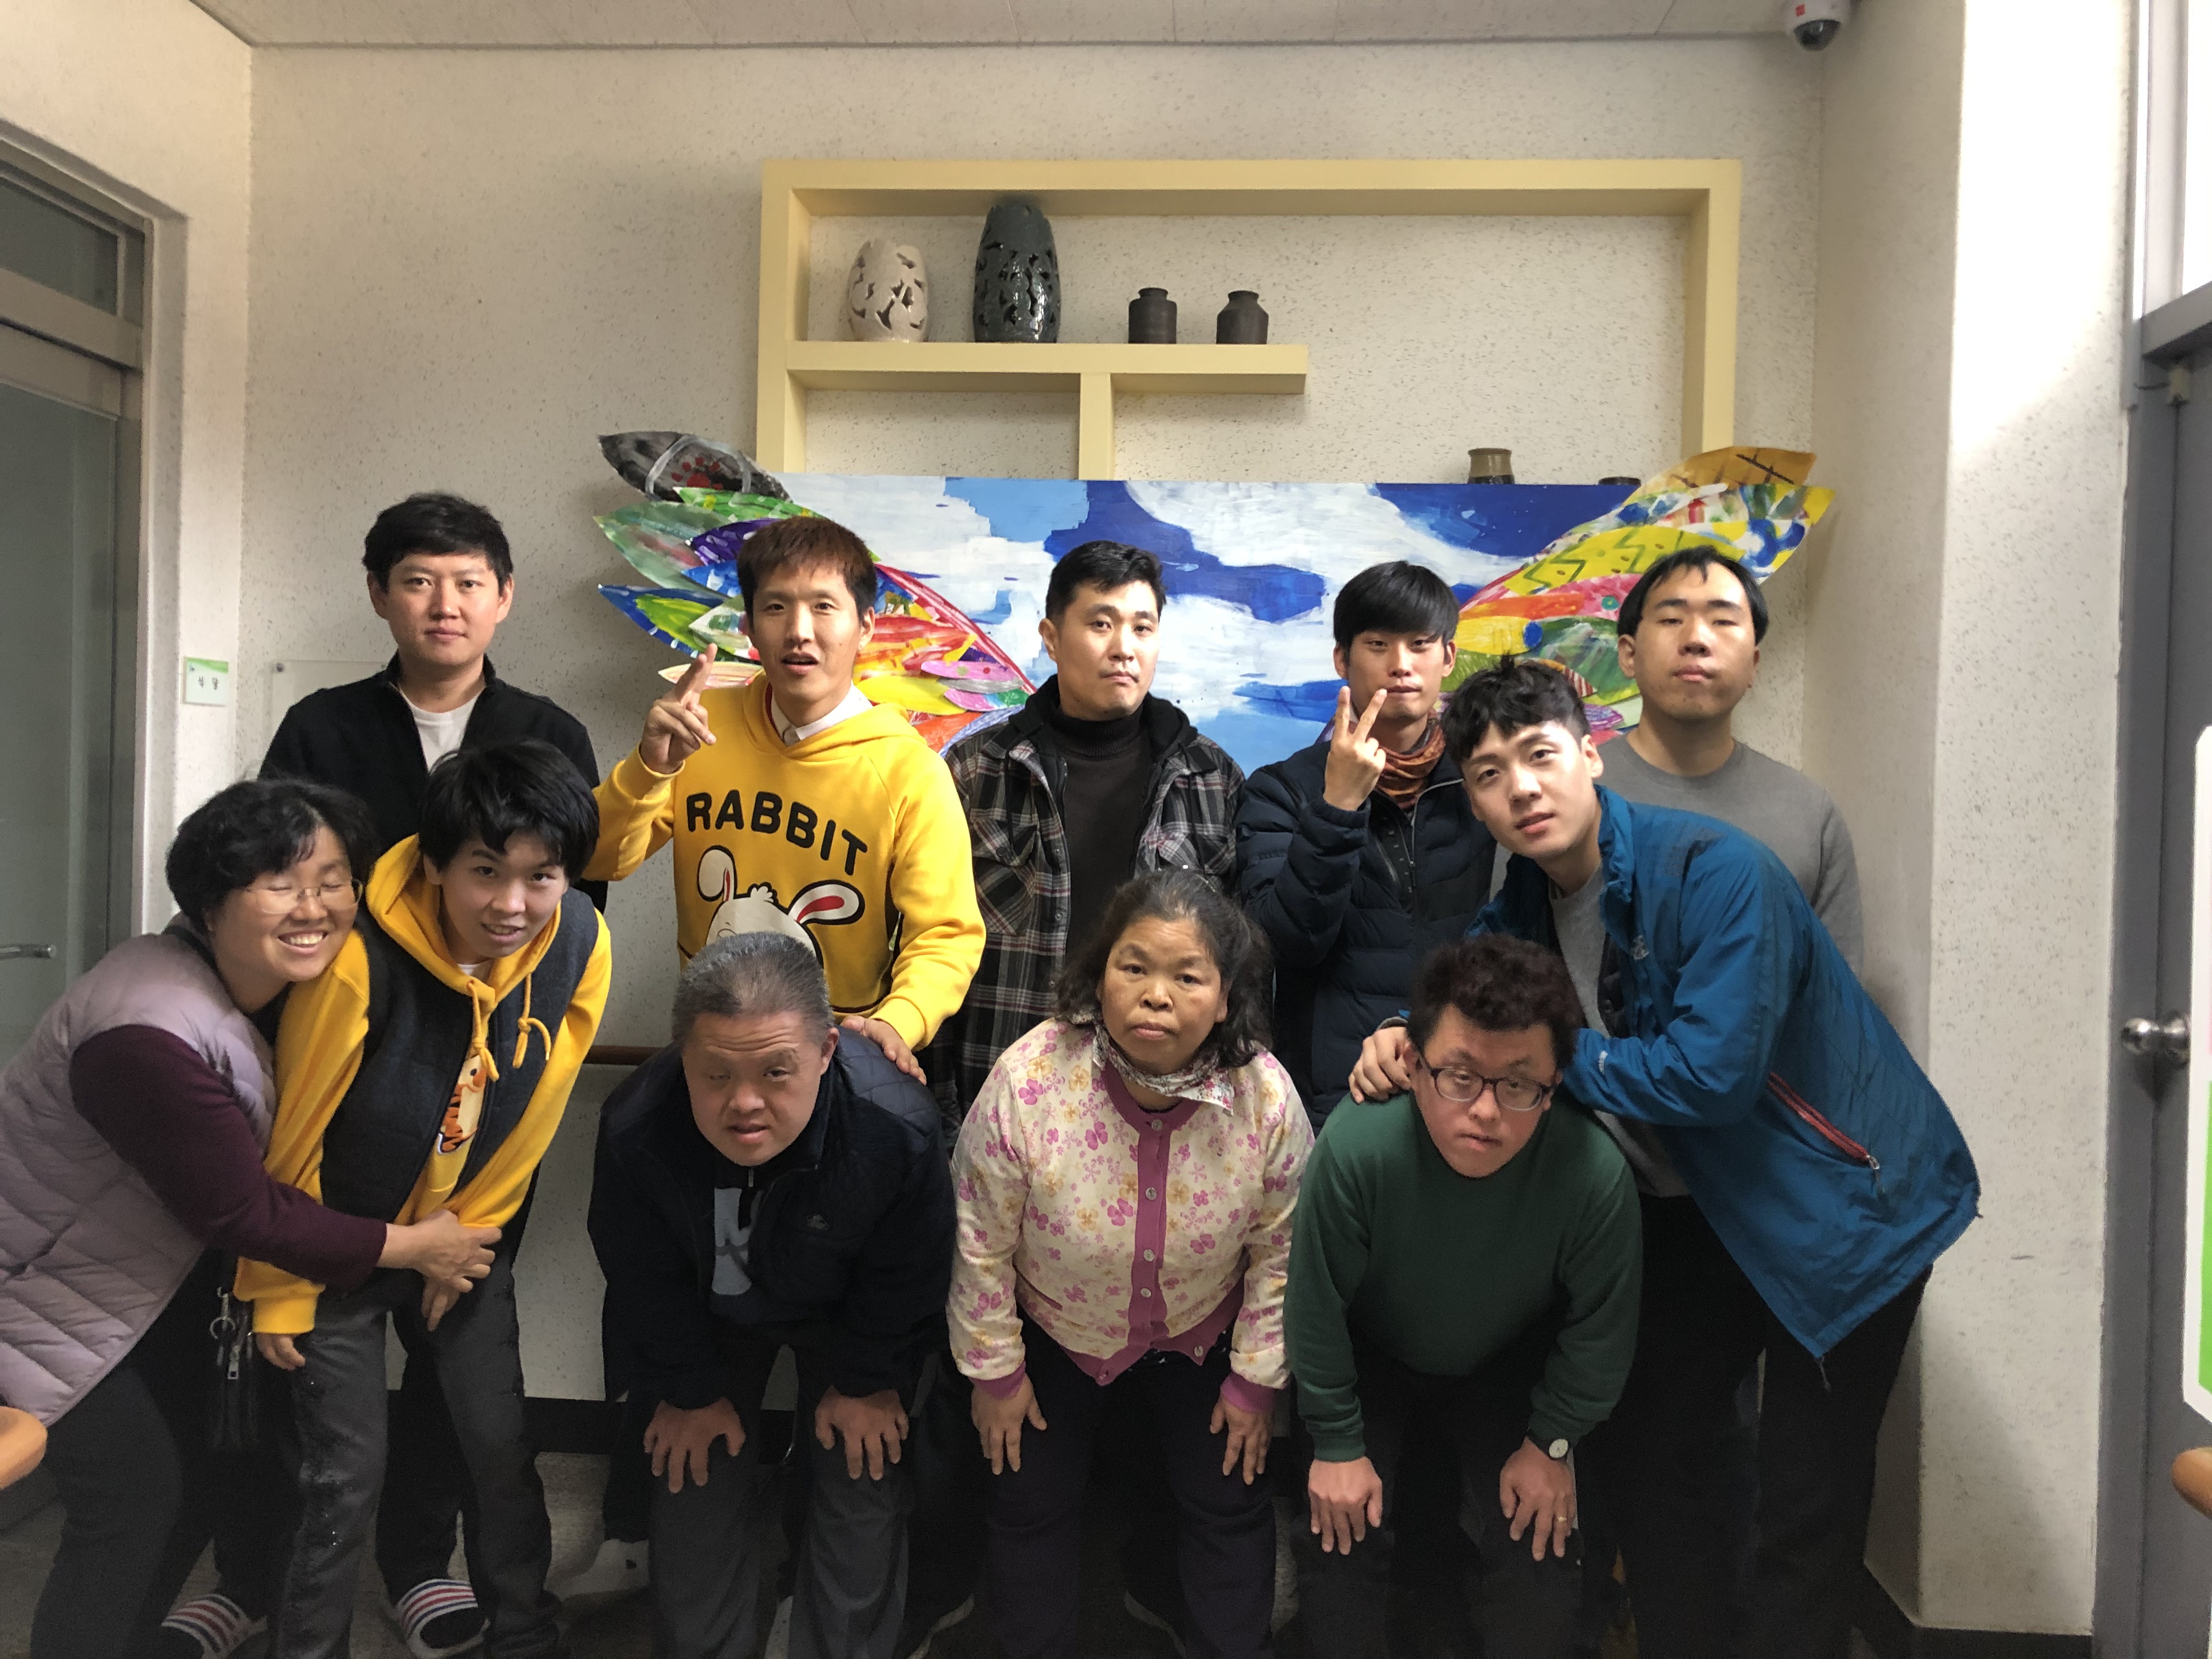 한국장애인복지관협회에서 지원 받아 2019년 3월 ~ 11월 까지 진행된 이번 사업은 참가하신 분들의 예술감각을 자유롭게 표현  하고 다양한 소재를 사용하여 각 회기 마다 새로운 미술 작품을 만들어 가는 프로그램입니다.